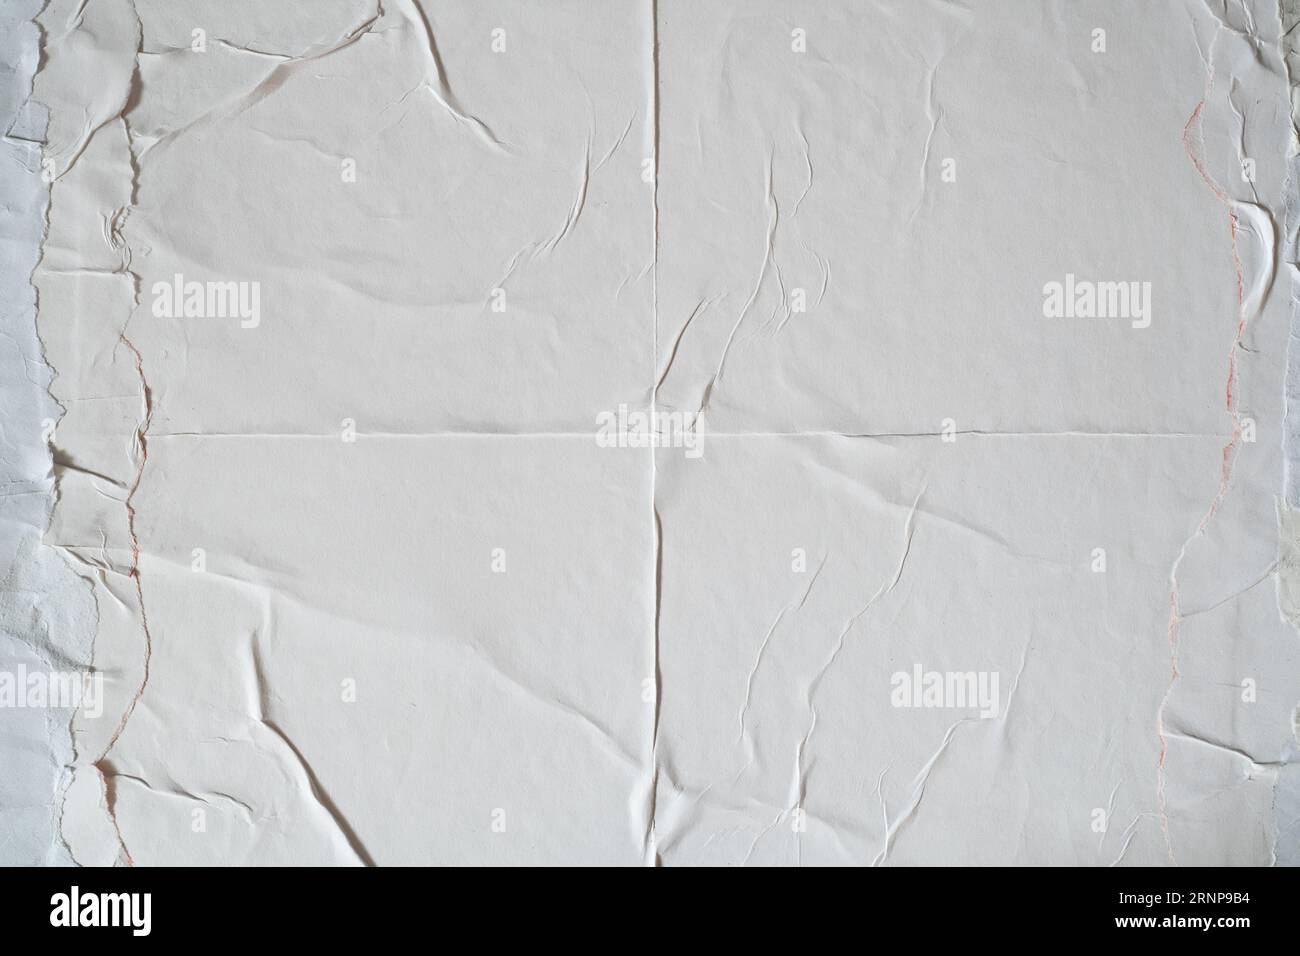 White wheatpaste poster style texture background Stock Photo